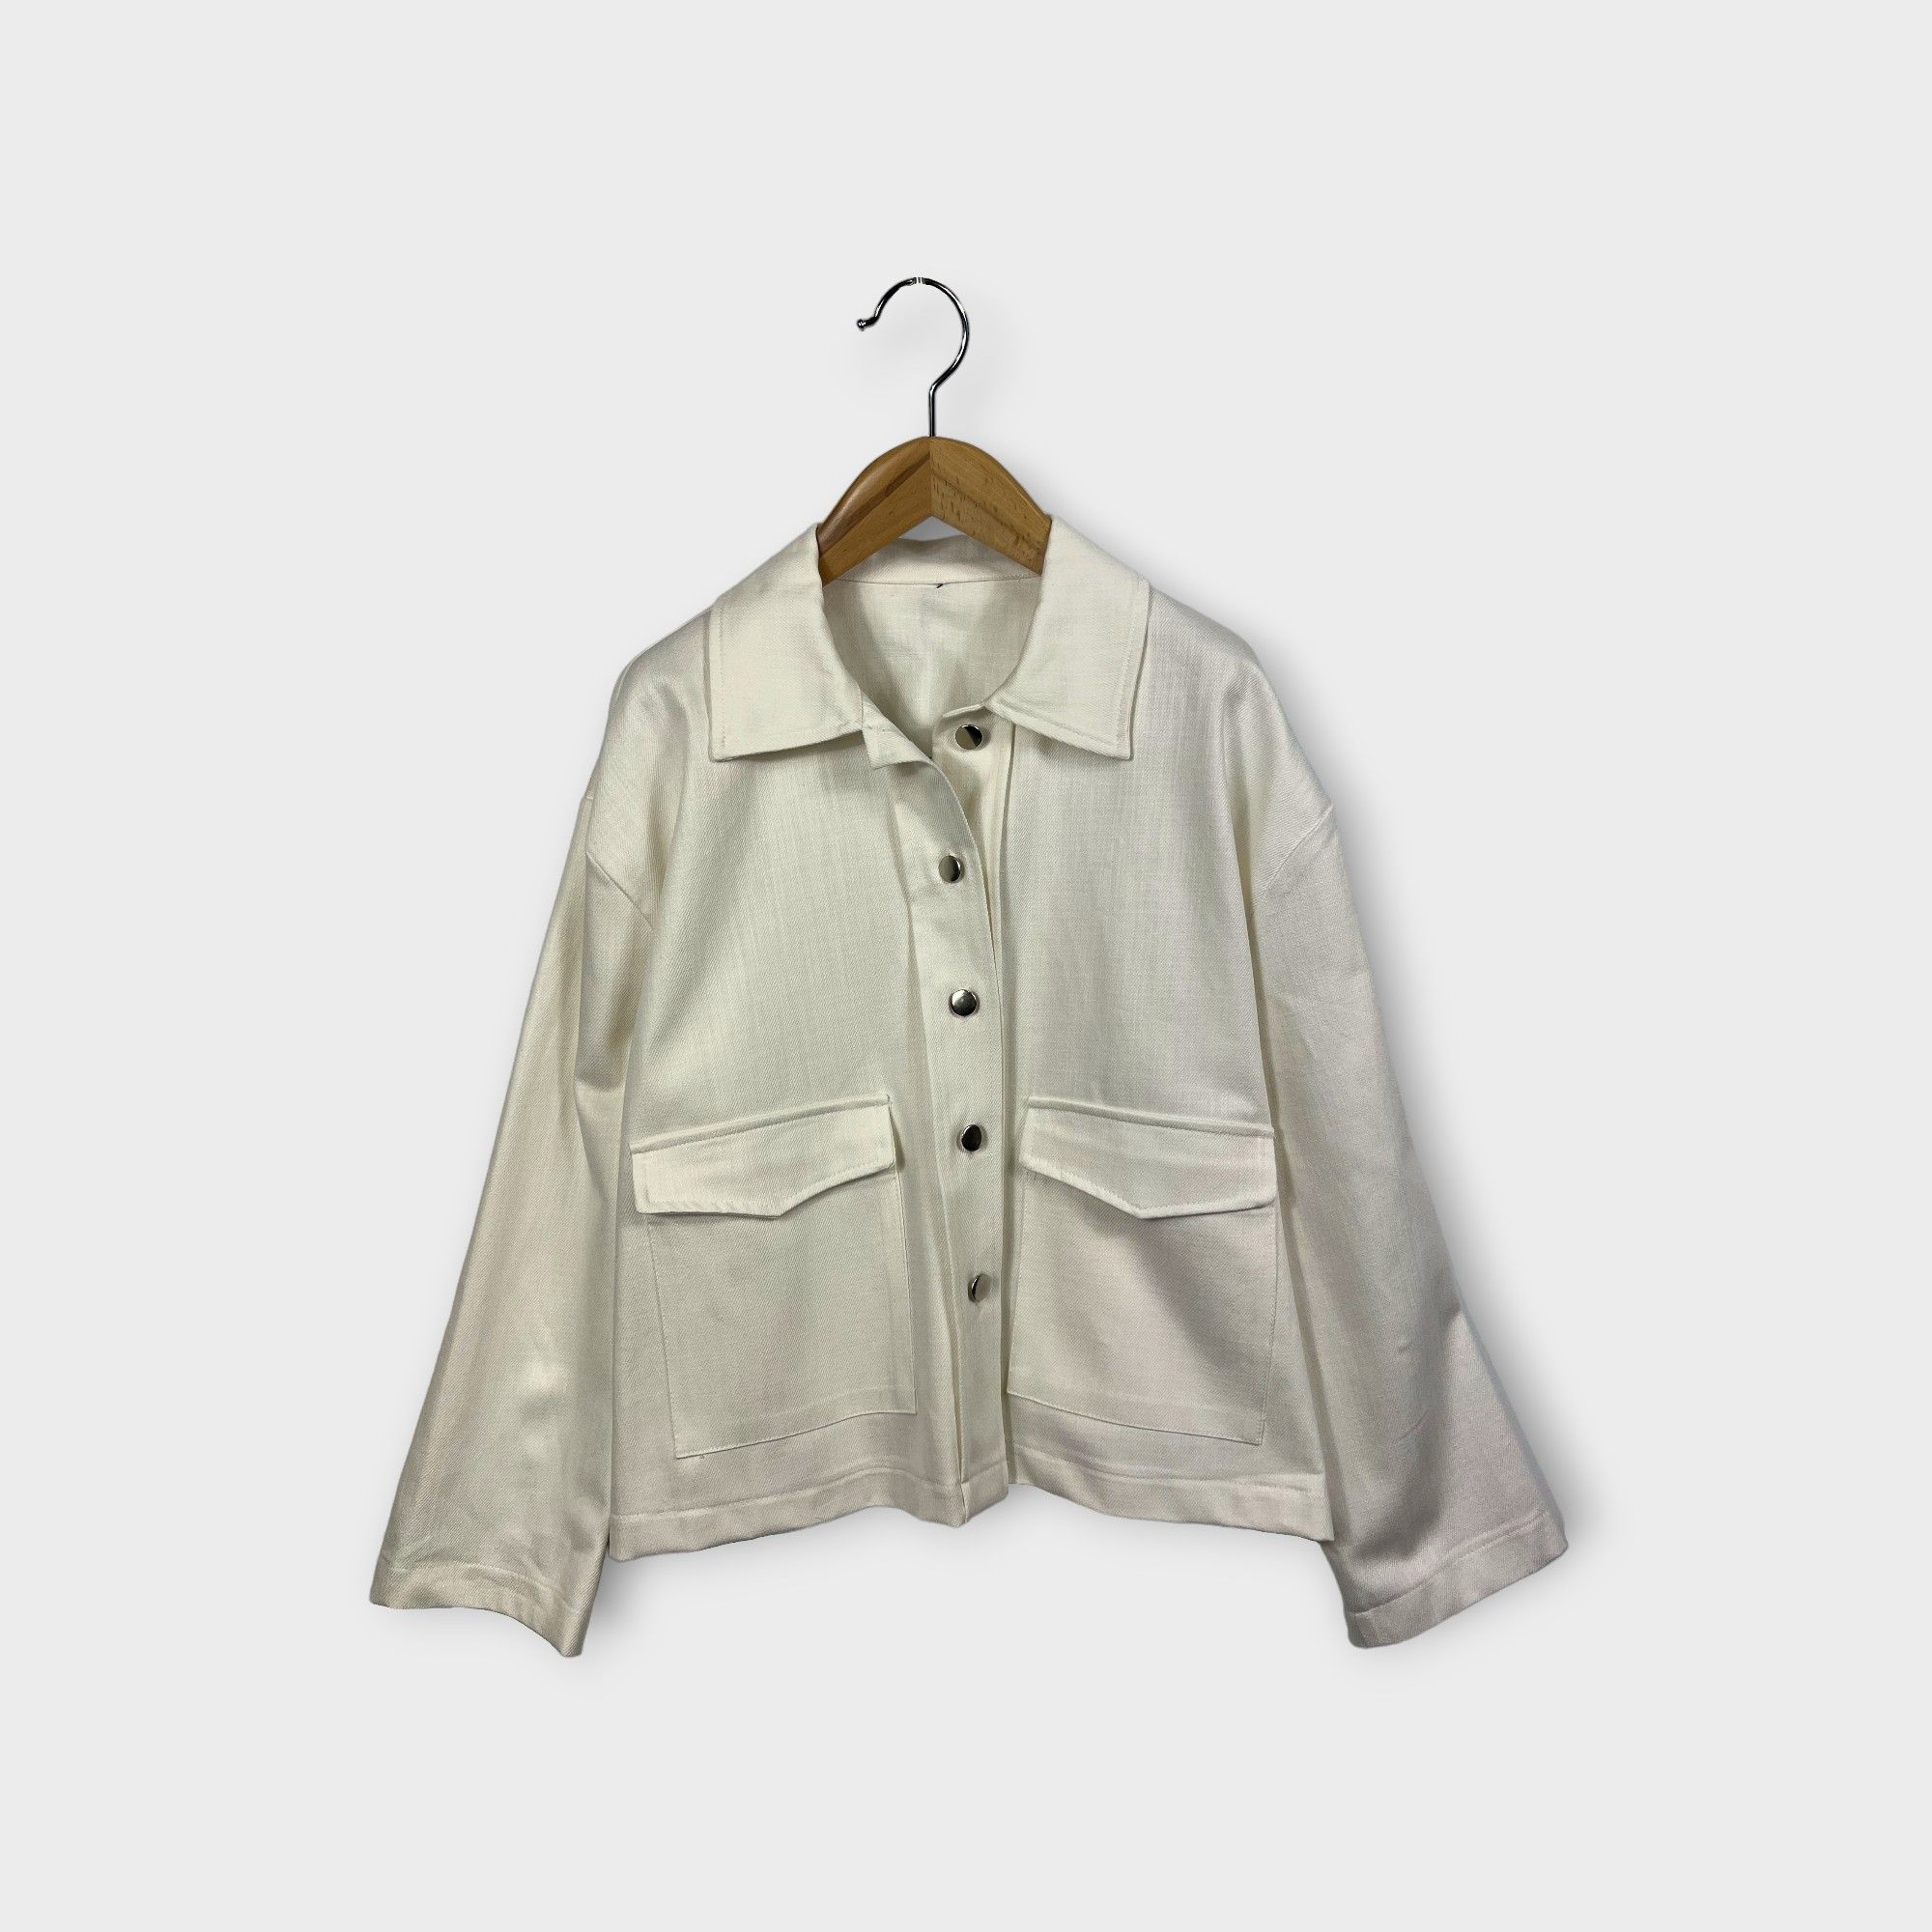 HELLEH - Overjacket in cotone con collo a camicia e bottoni in metallo